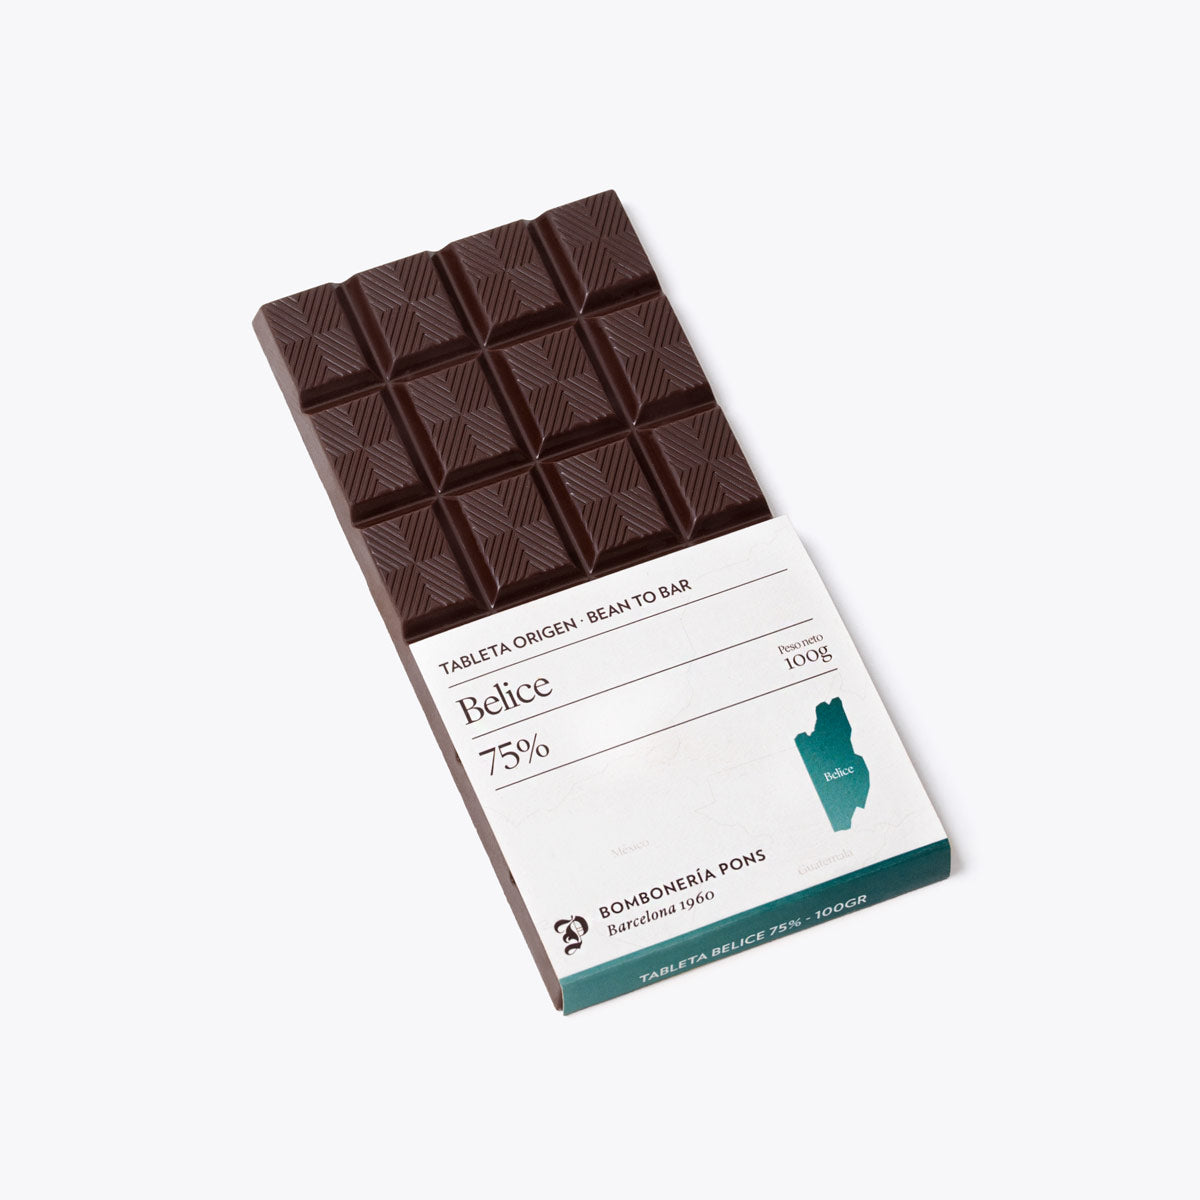  Belice - Tableta de chocolate negro 75% - 100g